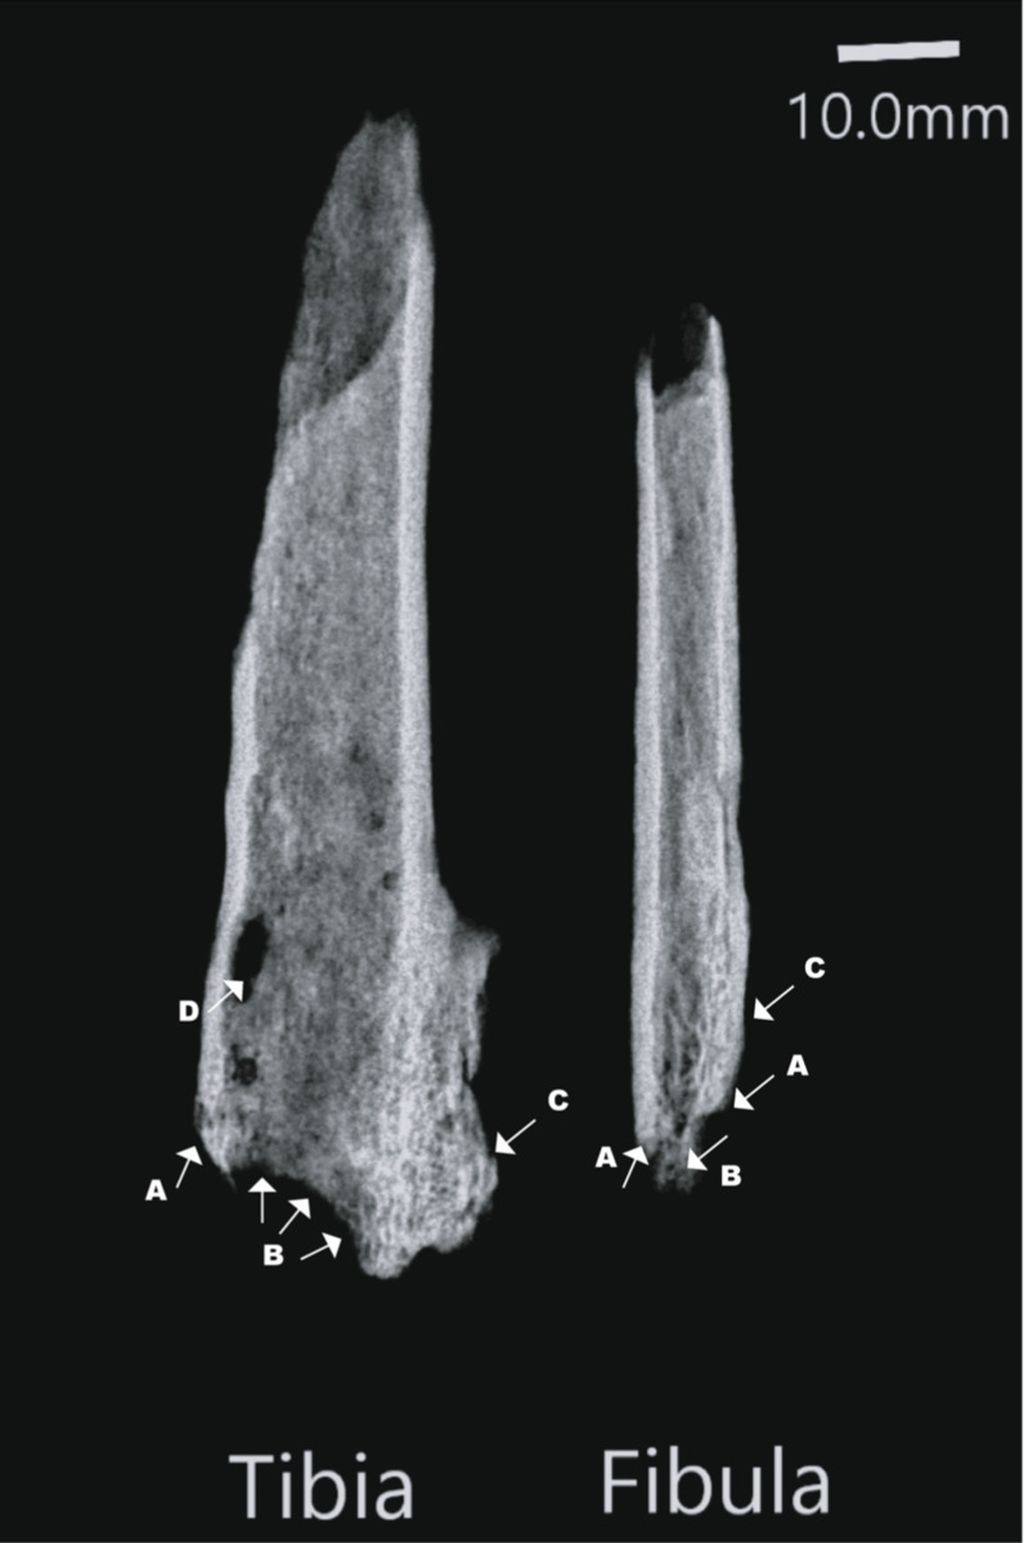 Radiografi anggota badan kerangka distal kiri yang diamputasi, yang ditemukan di Liang Tebo, Kalimantan Timur. Panah putih menunjukkan (A) Margin pemotongan yang jelas menunjukkan penggunaan alat yang tajam (B) Resorpsi tulang karena kurangnya vaskularisasi yang tepat dari jaringan tulang. (C) Osifikasi heterogenik dari membran interoseus. (D) Kerusakan <i>post-mortem</i>. Catatan: fibula ditempatkan postero-anterior. Sumber: Tim Ryan Maloney, dkk, jurnal <i>Nature</i> (2022).